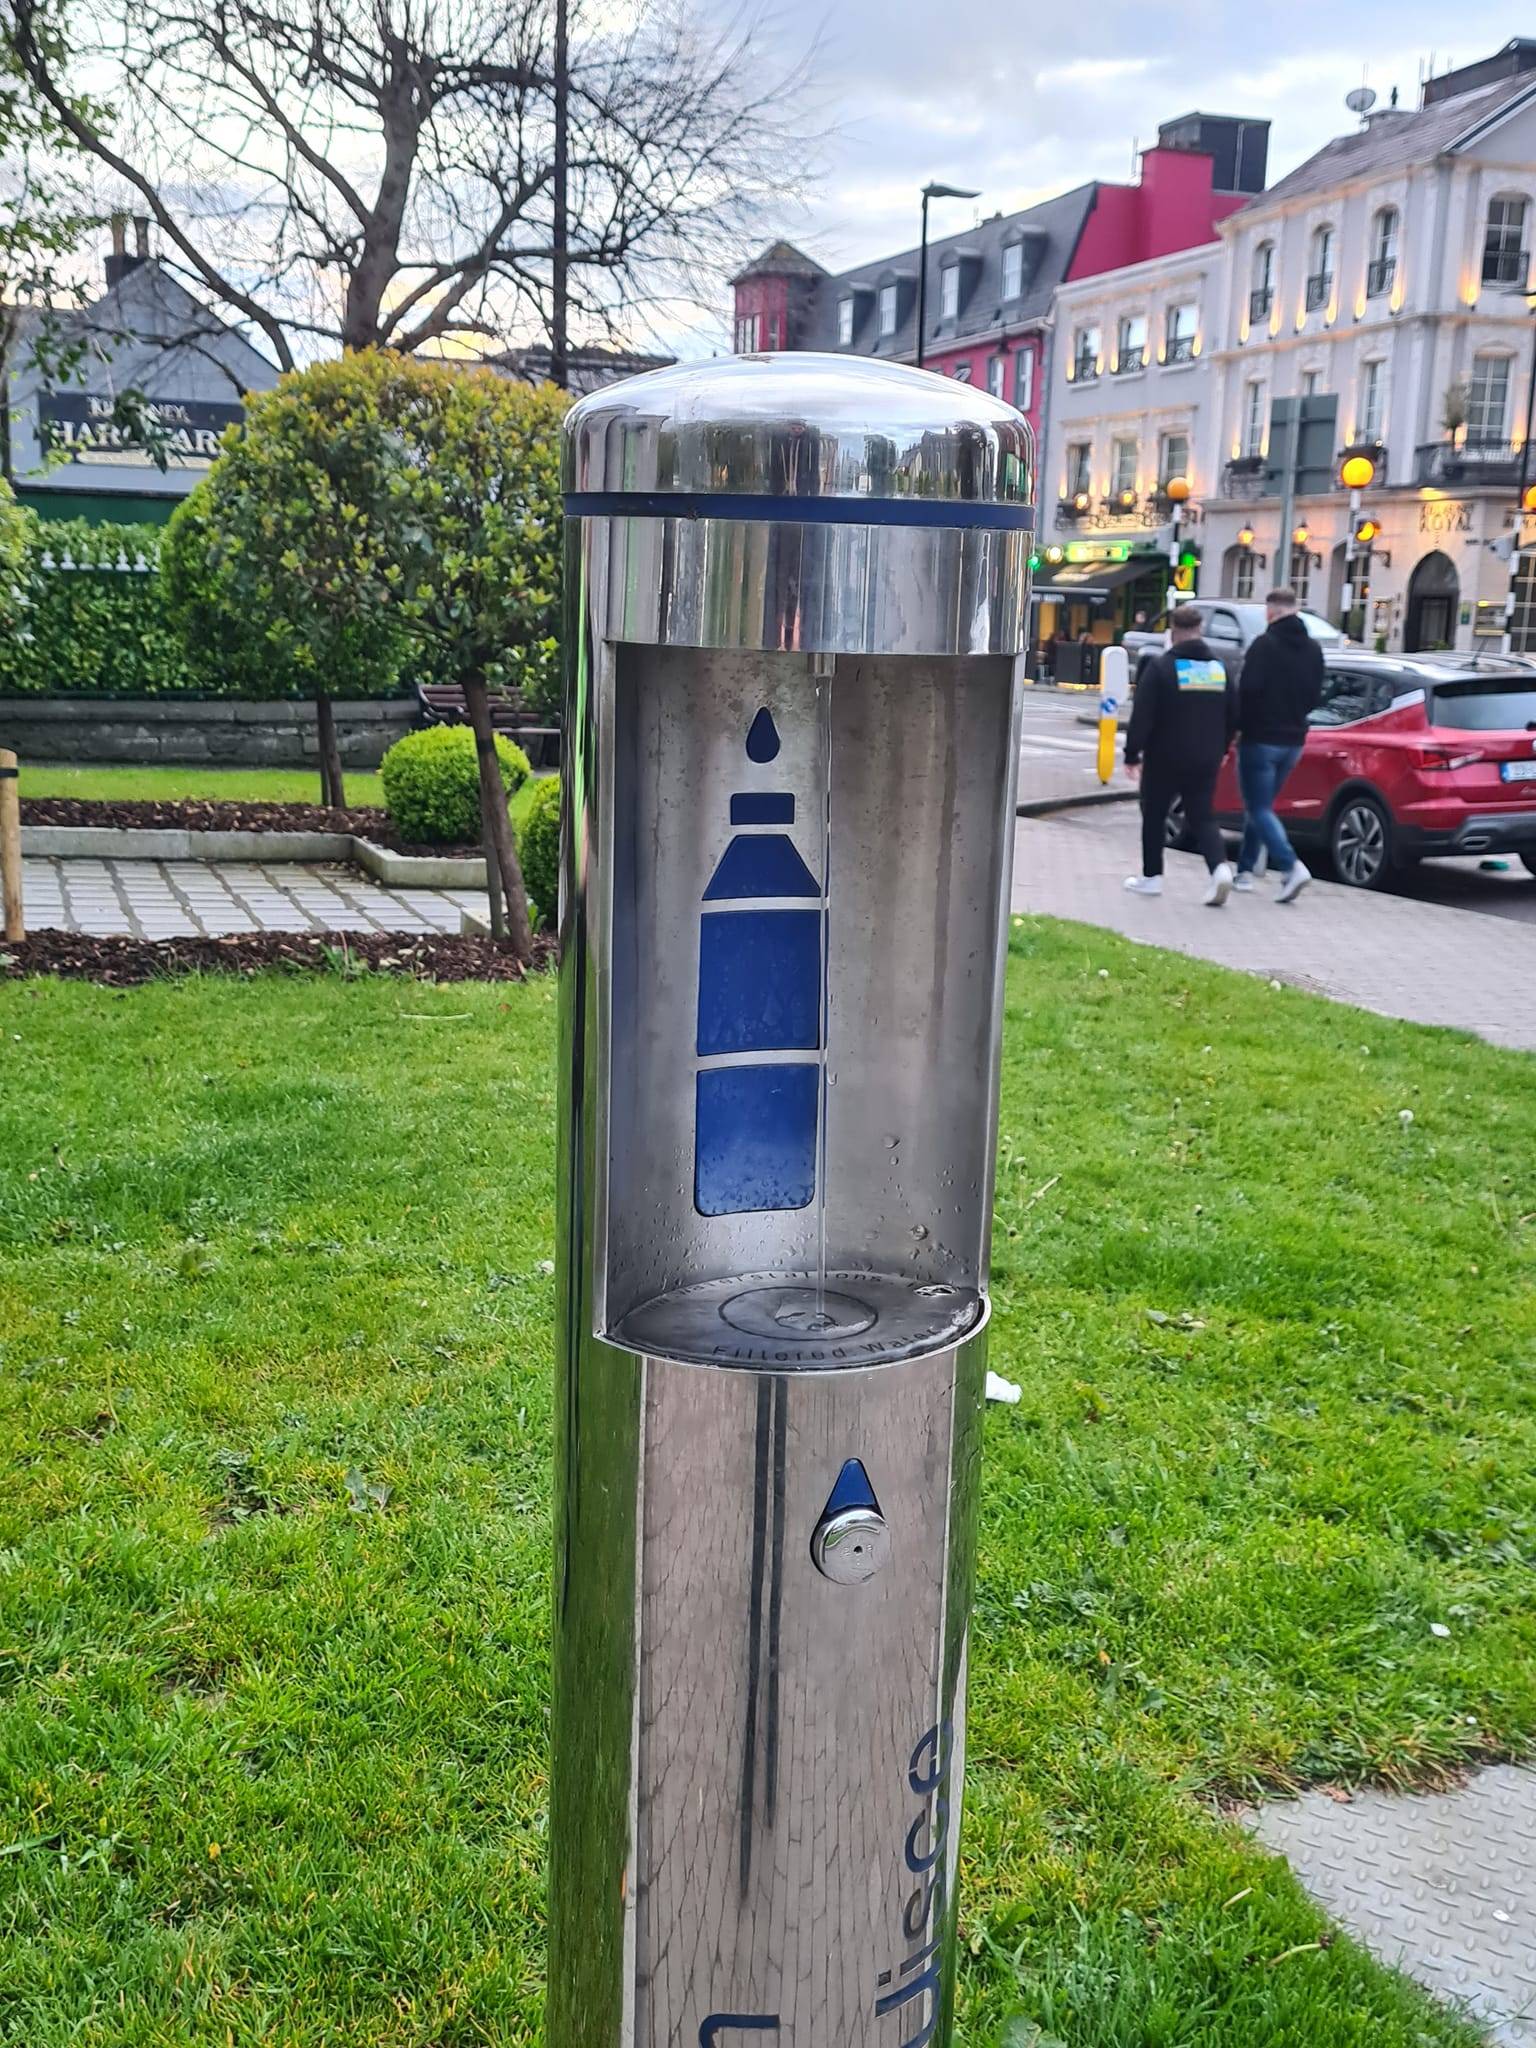 Jeste li znali da stanovnici Dublina imaju besplatnu vodu? E sad, zapitajmo se možemo li išta naučiti iz ovog irskog primjera 